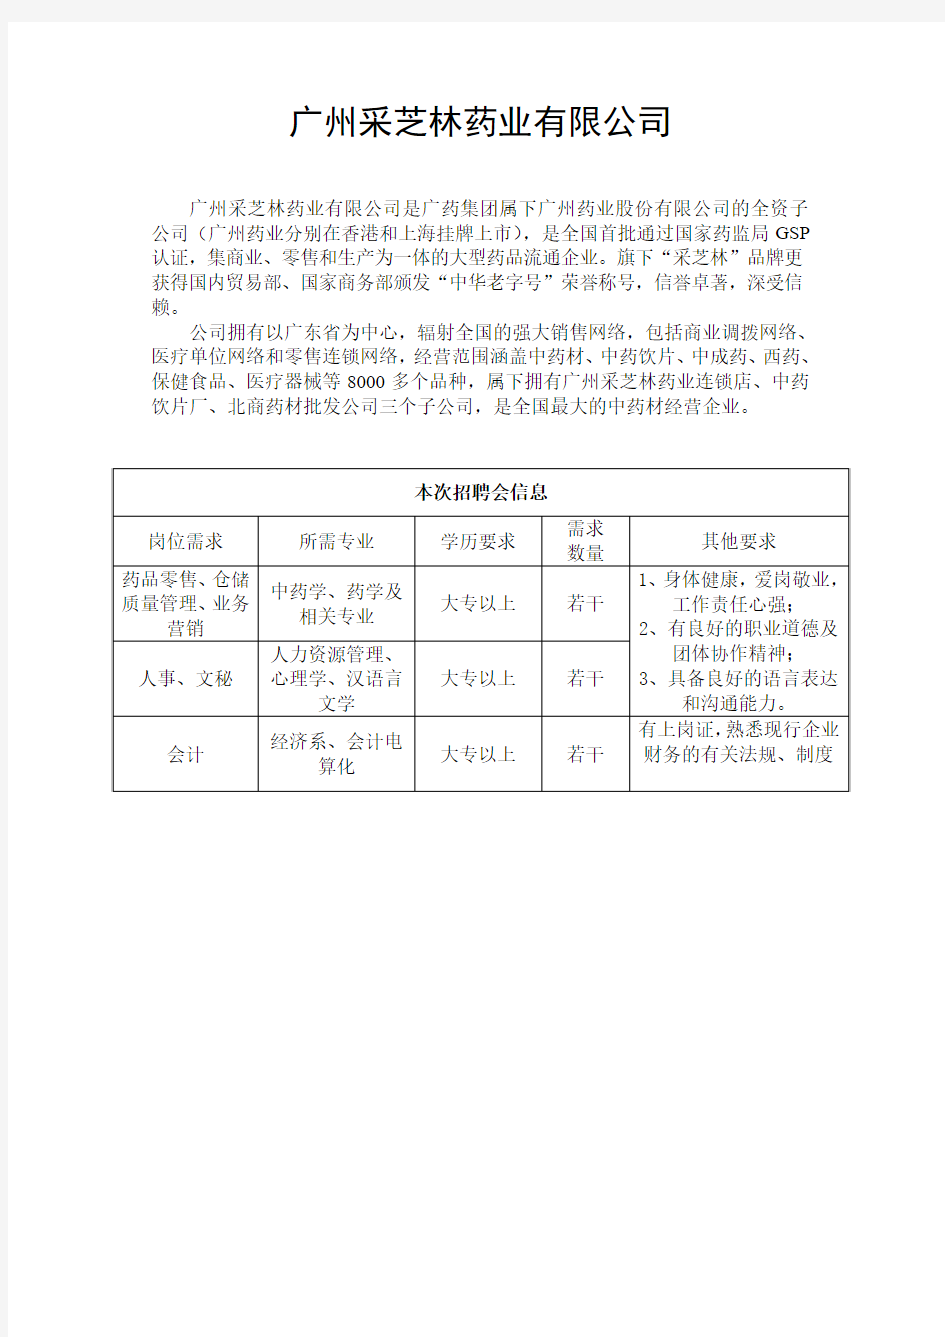 广州采芝林药业有限公司 - 南方人才网-人才招聘,求职找工 …